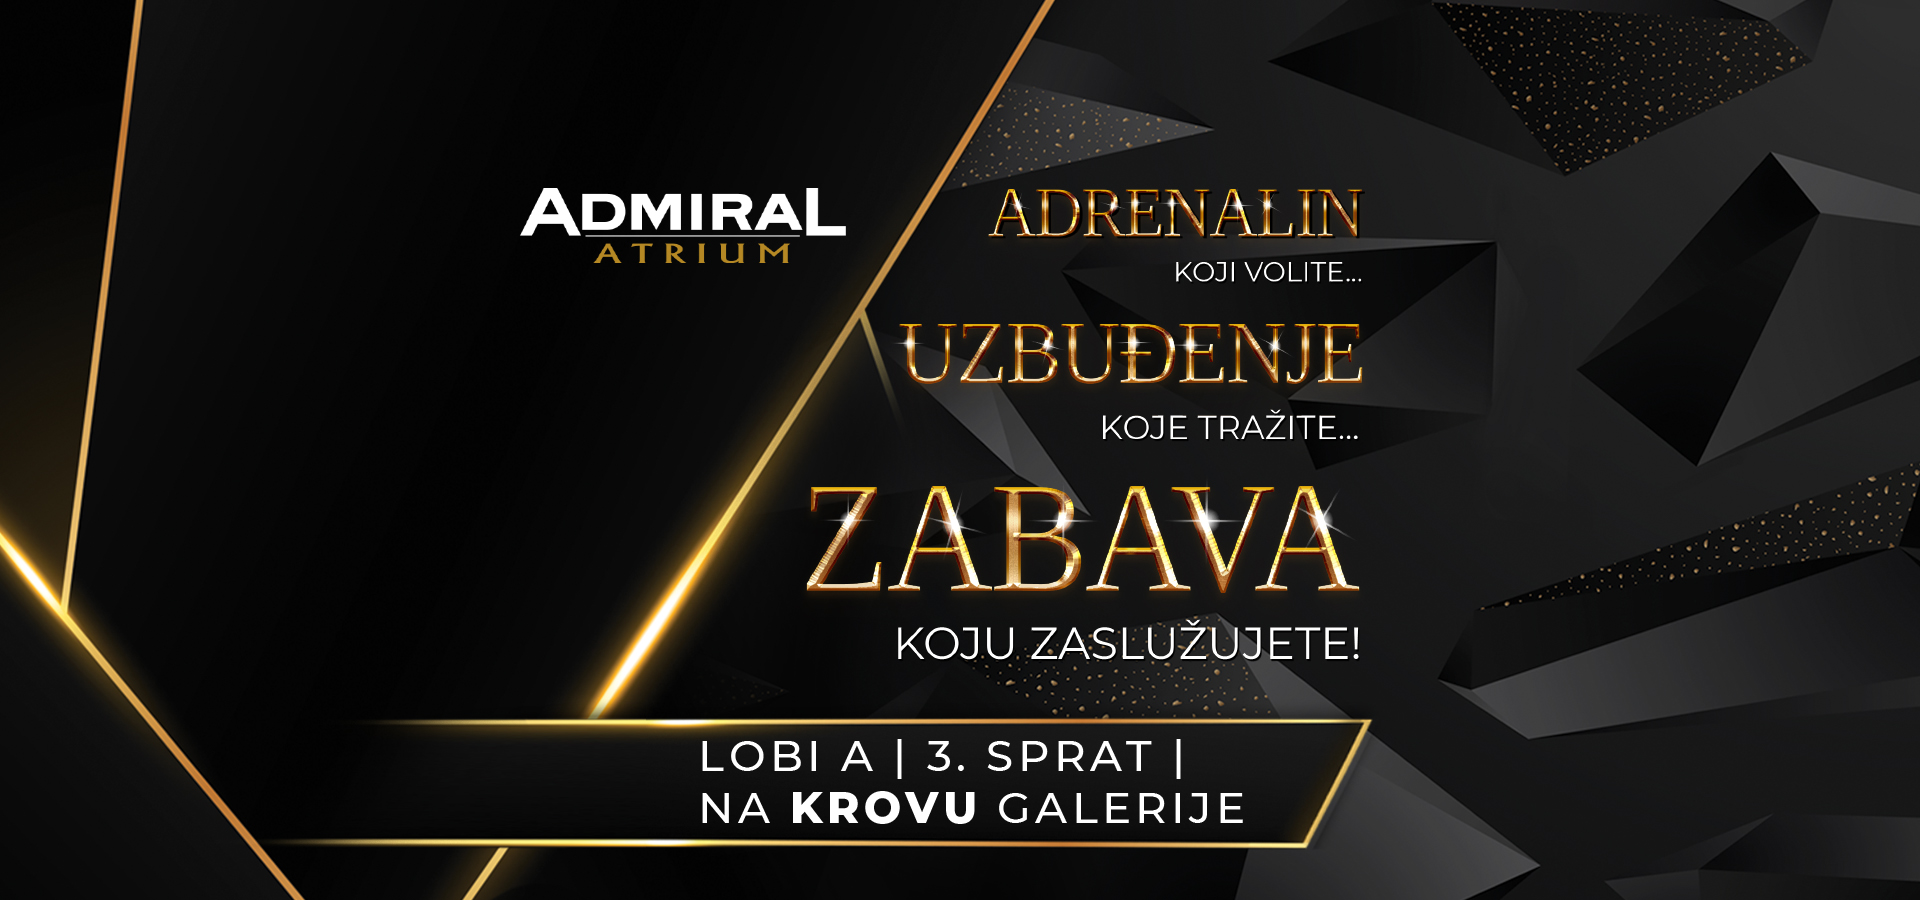 Admiral Atrium u Beogradu na vodi